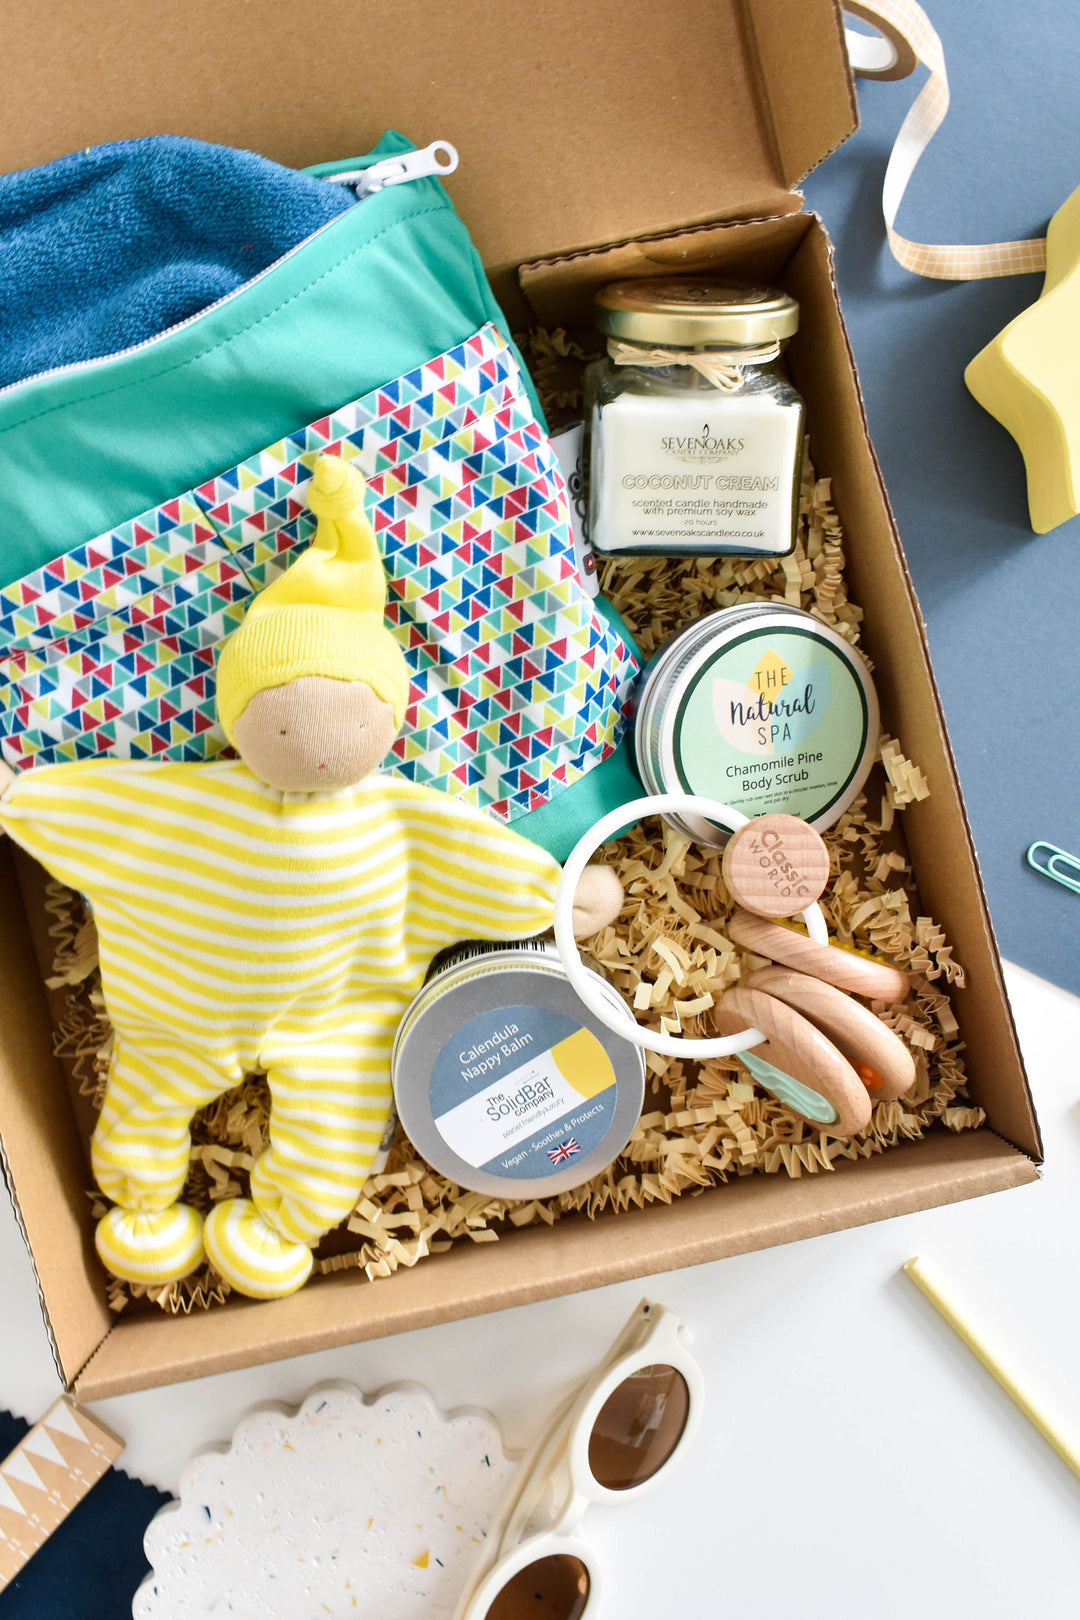 Welcome to the world gift box - Mum & Baby